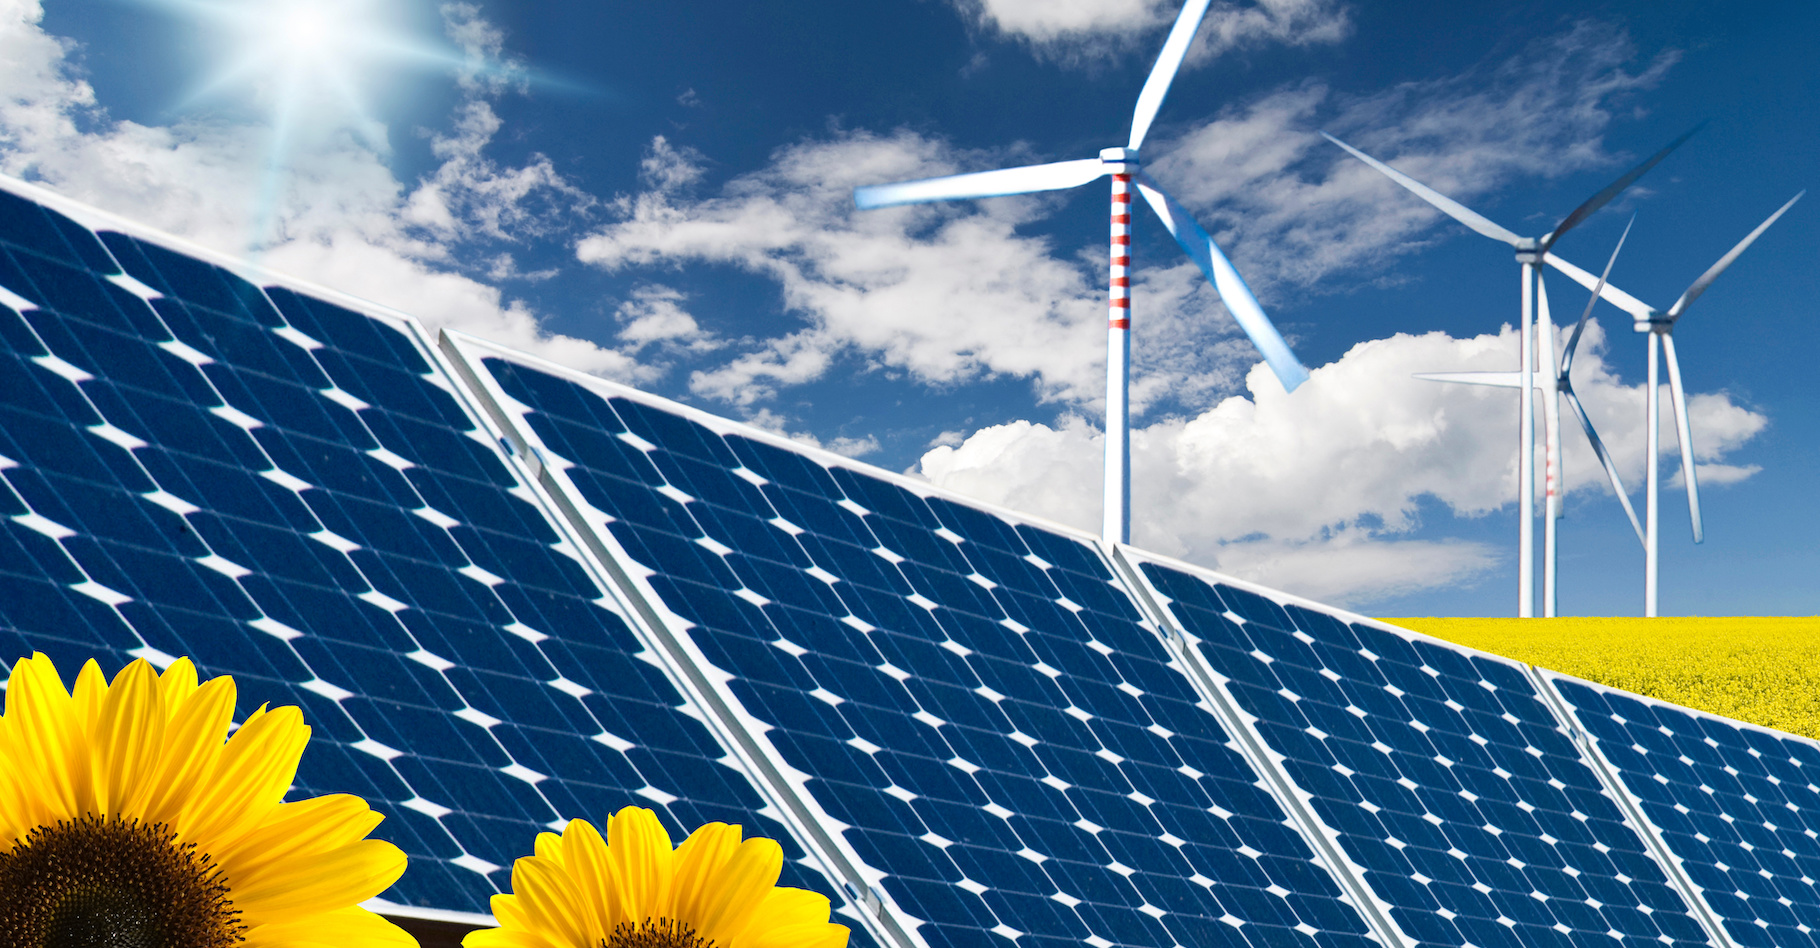 Selon l’Agence internationale de l’énergie (AIE), les énergies renouvelables seront celles qui produiront la plus grande part de l’électricité mondiale dès 2025. © luigi giordano, Adobe Stock